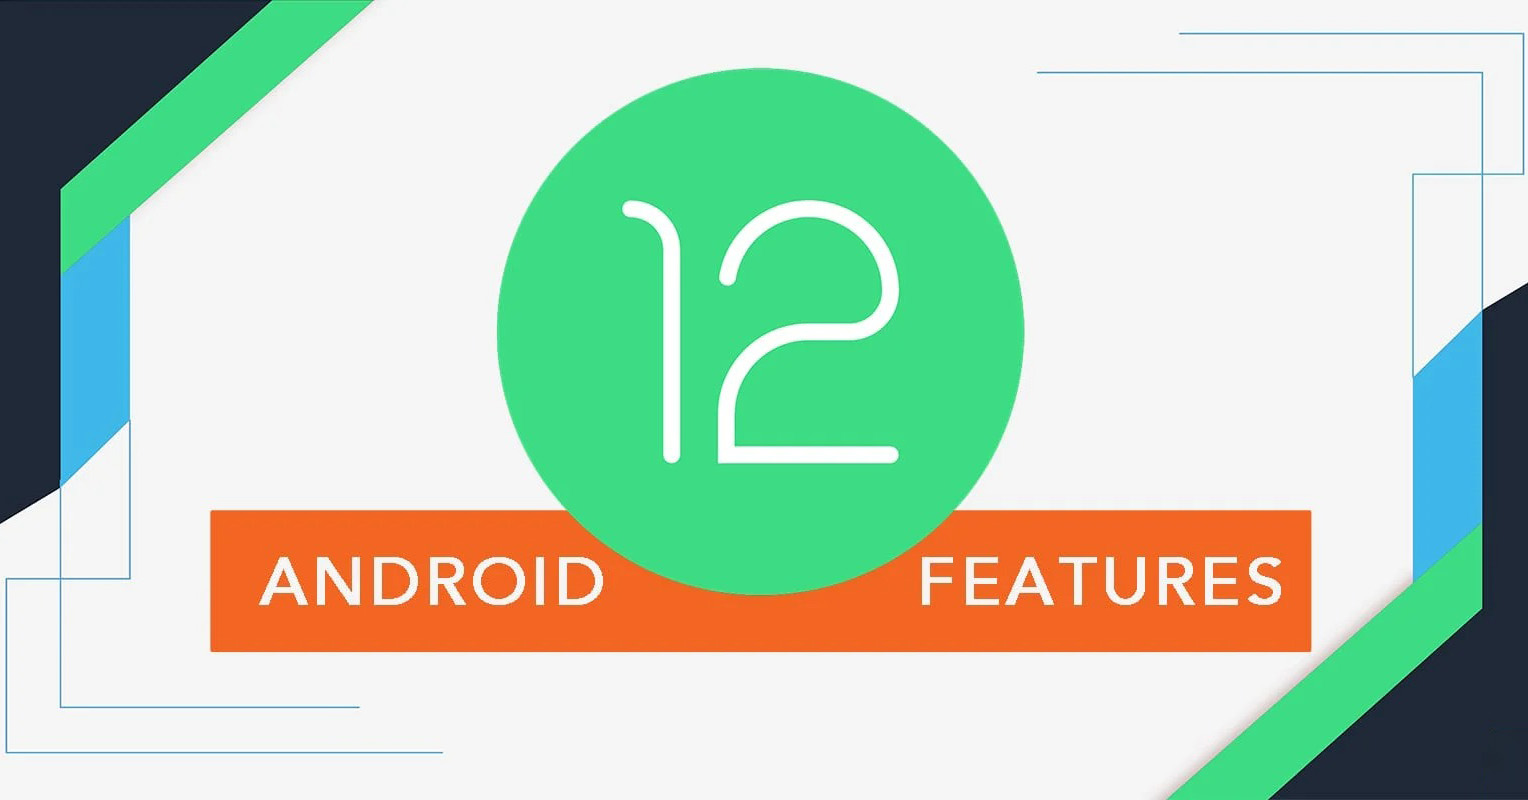 Phiên bản Android 12 hứa hẹn có nhiều tính năng mới